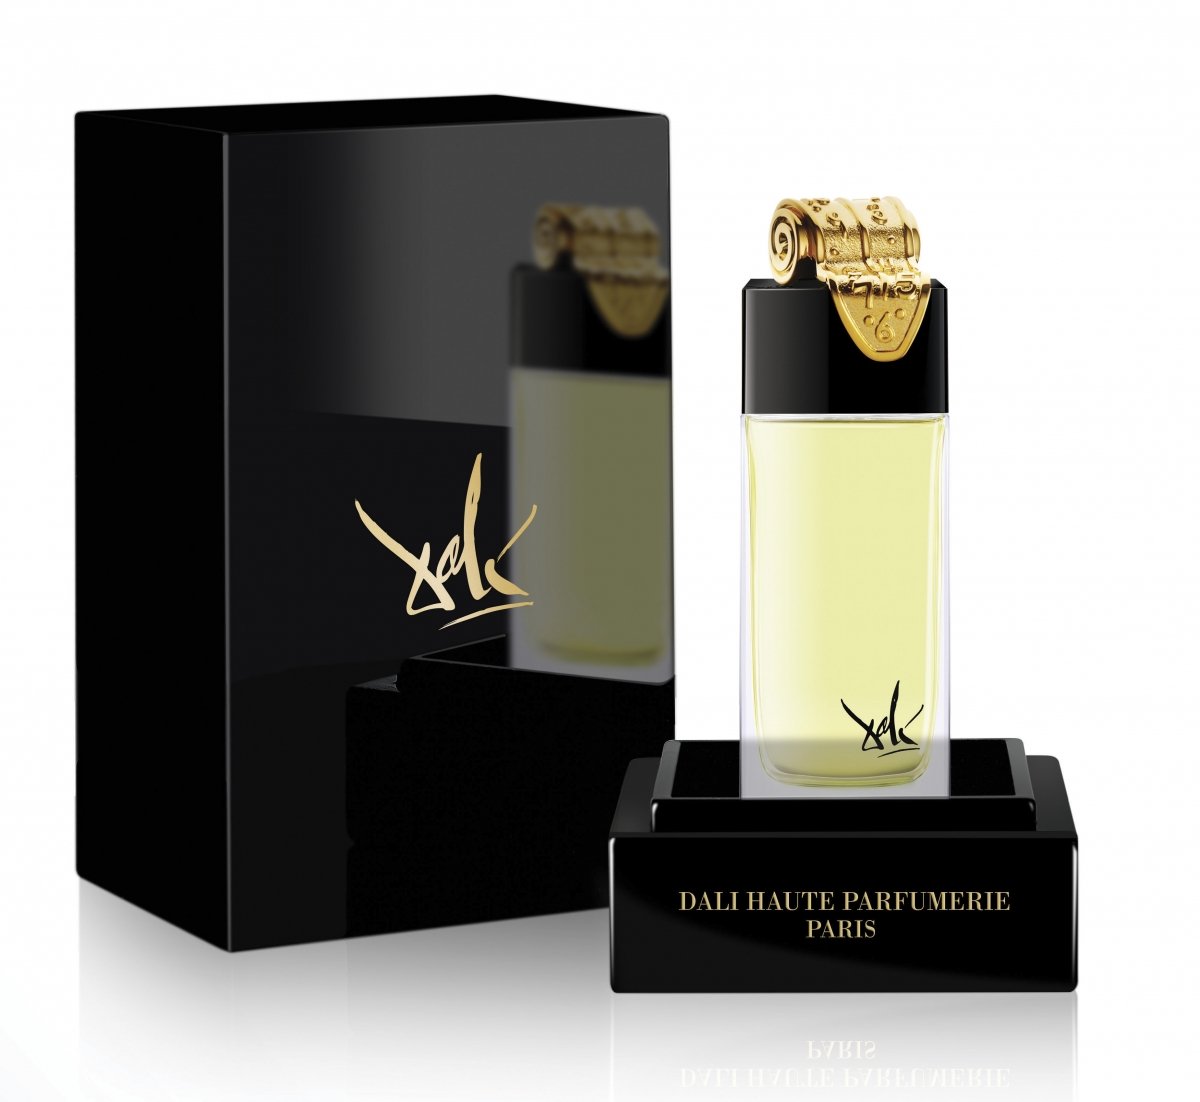 Dali Haute Parfumerie Fluidite Du Temps Imaginaire